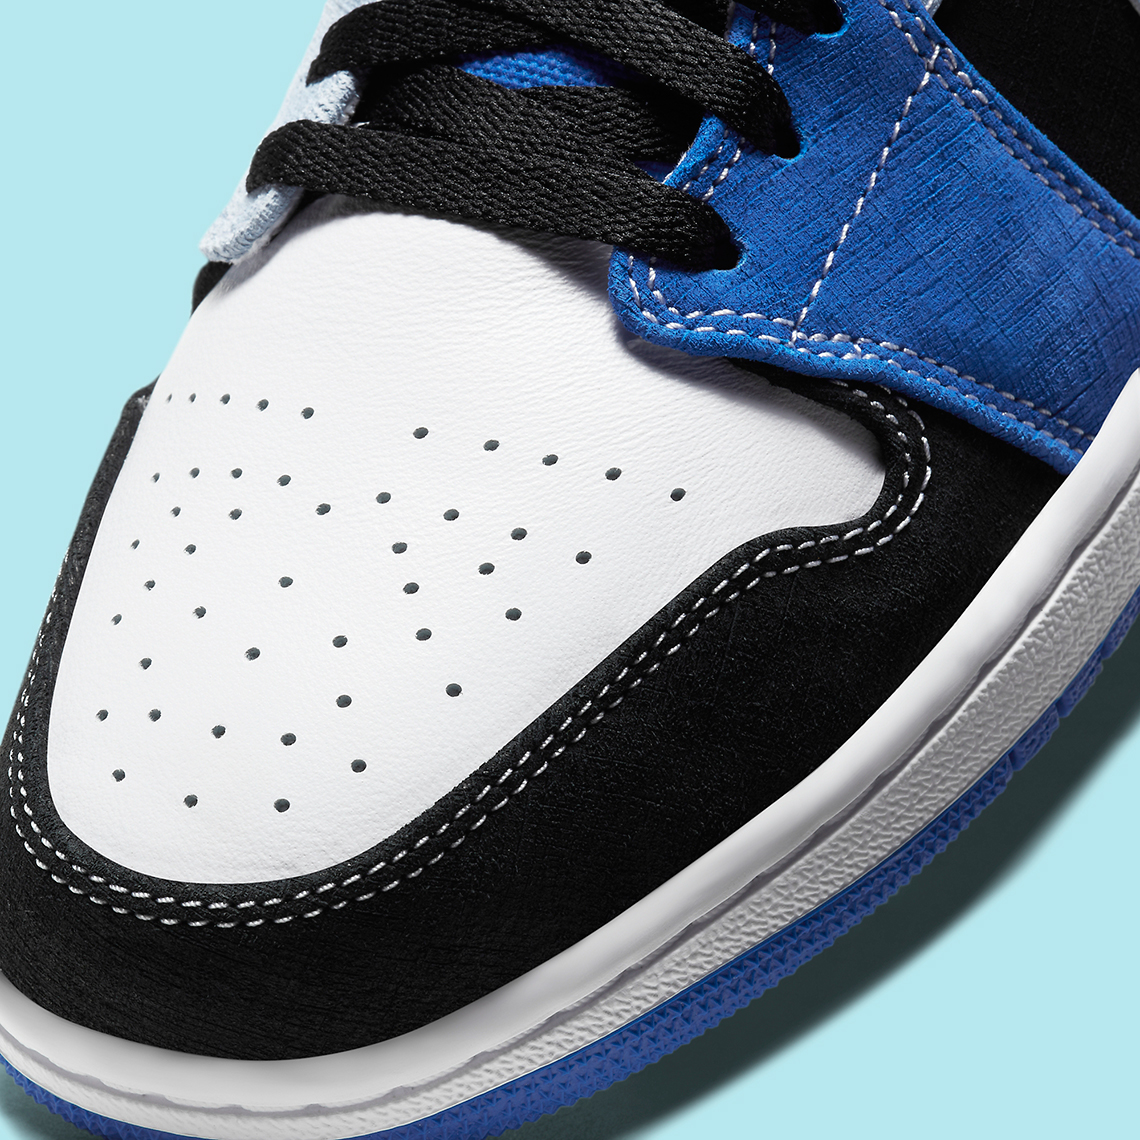 Air Jordan 1 Low DH0206-400 Release Info | SneakerNews.com